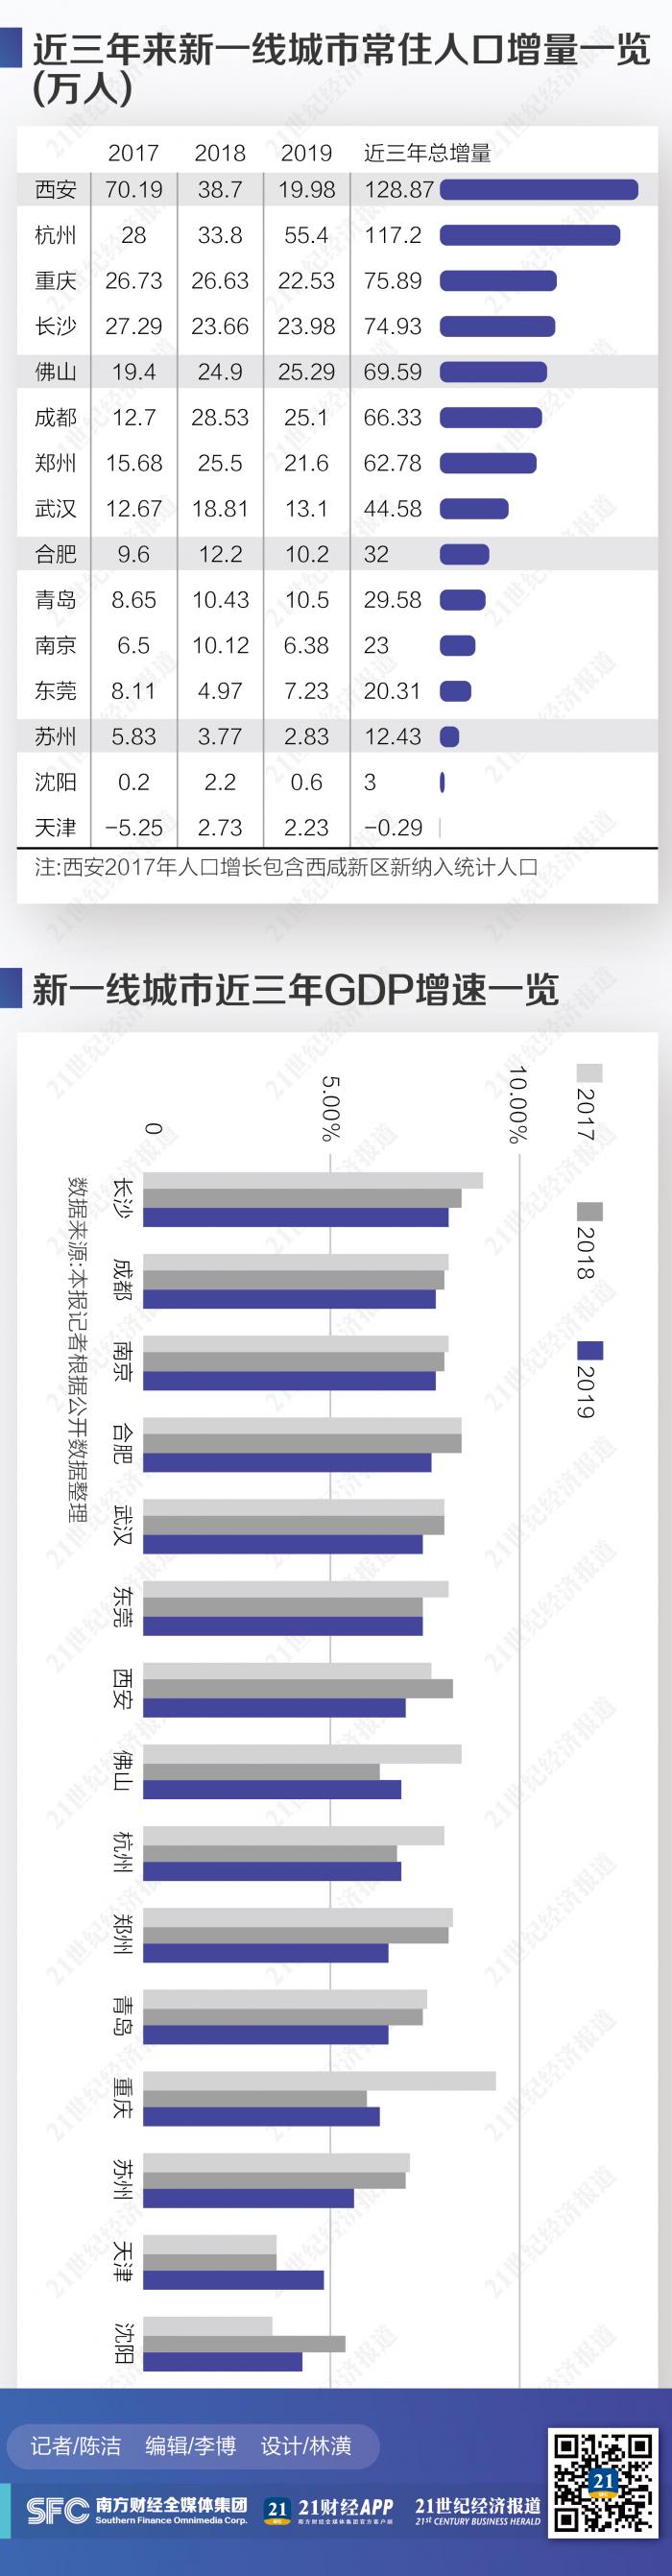  新一线城市人口竞争力 西安杭州3年增超百万